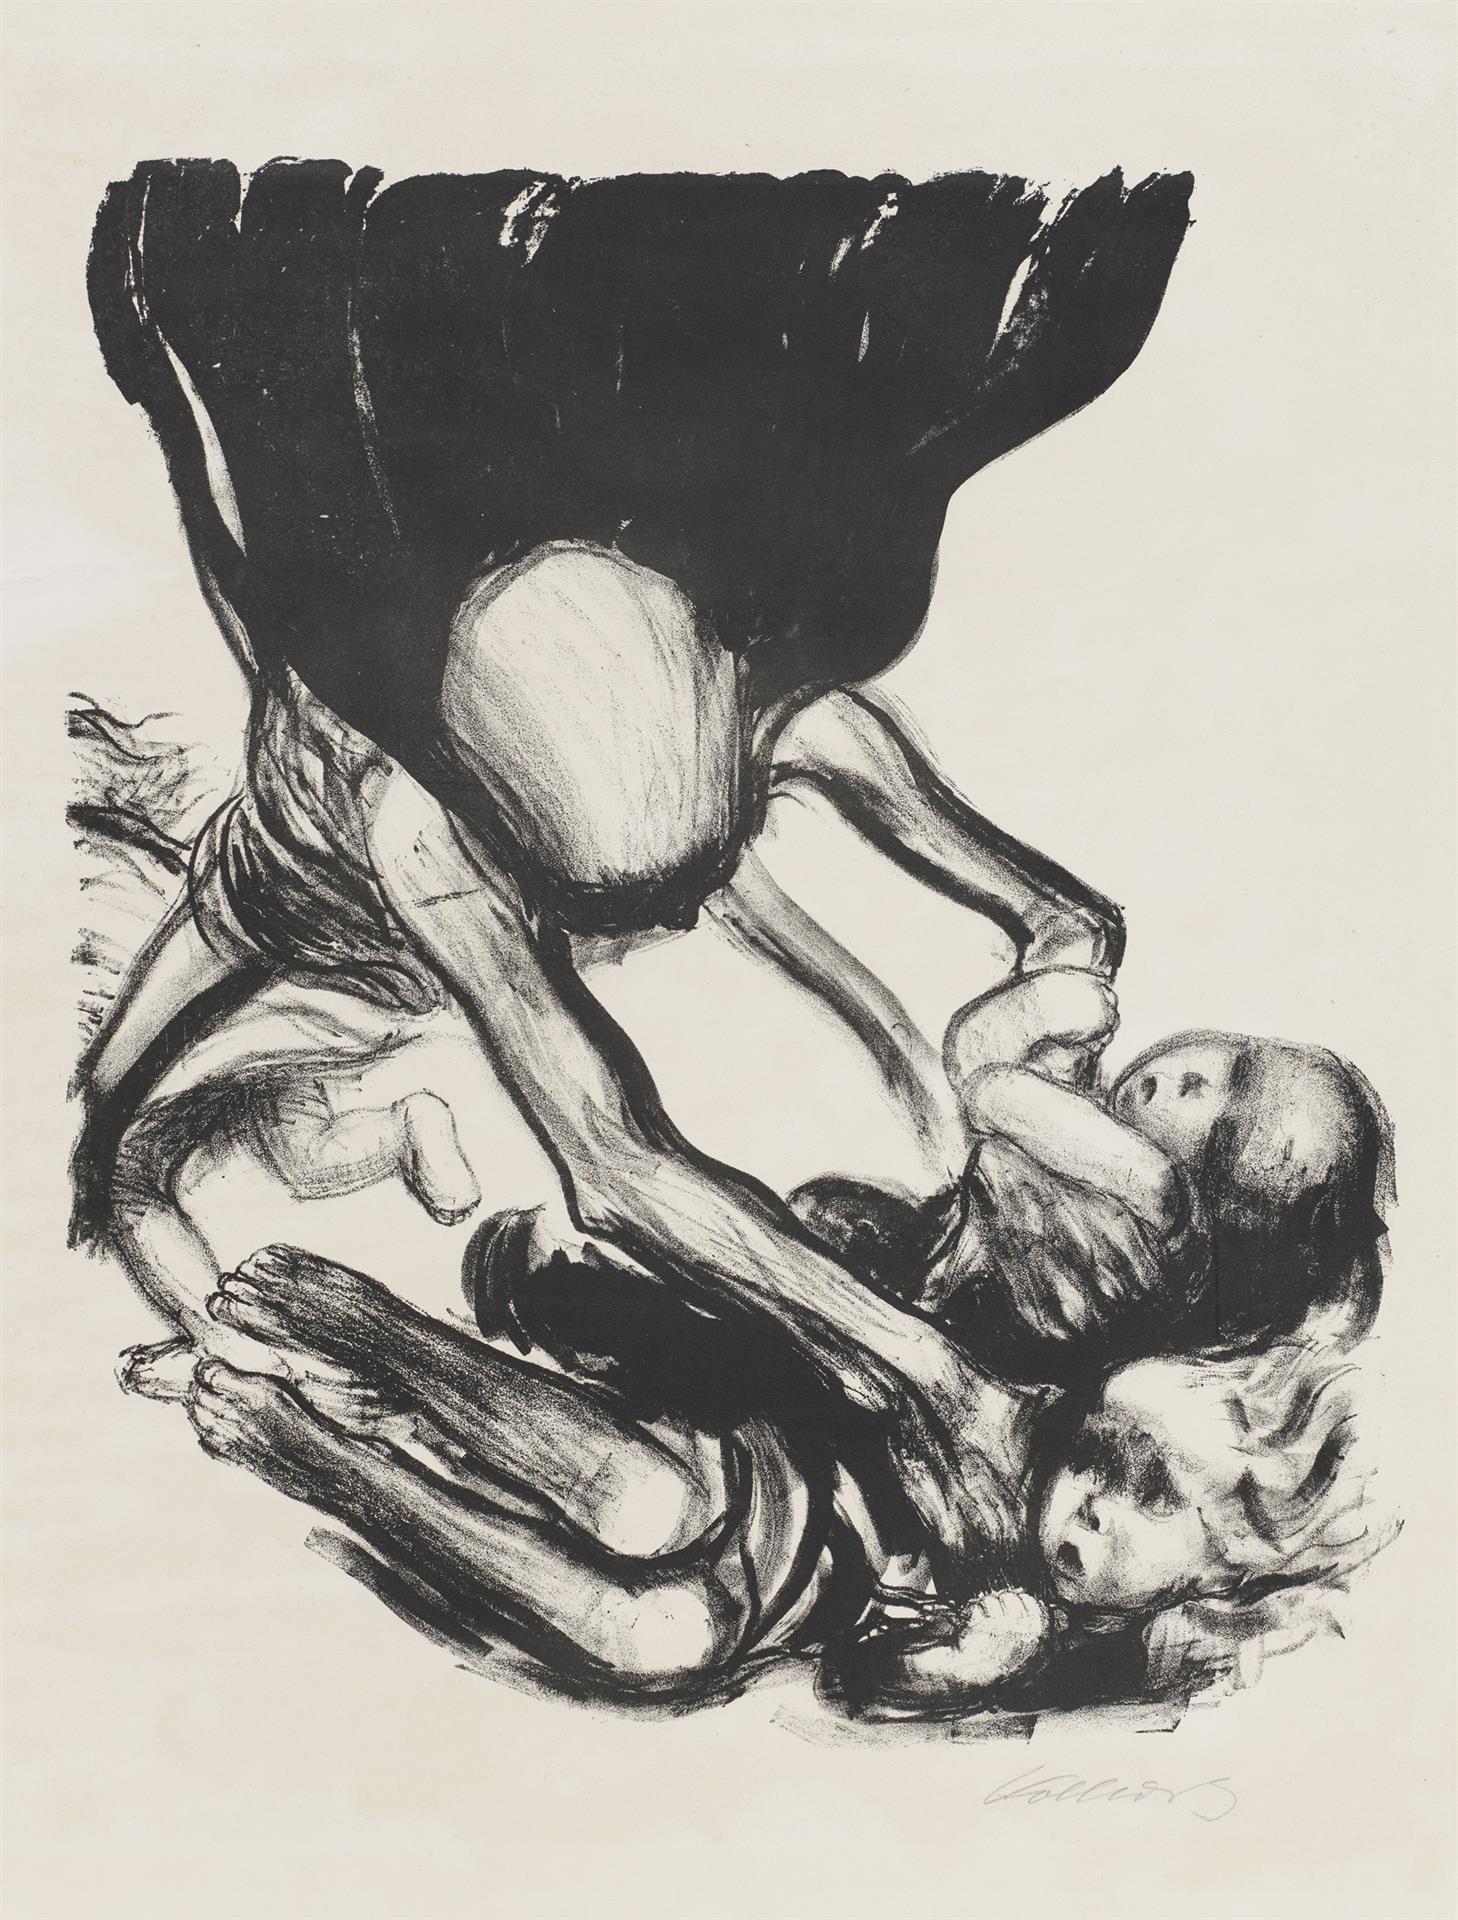 Käthe Kollwitz, La Mort s’emparant d’un groupe d’enfants, planche 3 de la série »Mort«, 1934, lithographie au crayon, Kn 266 II b, Collection Kollwitz de Cologne © Käthe Kollwitz Museum Köln